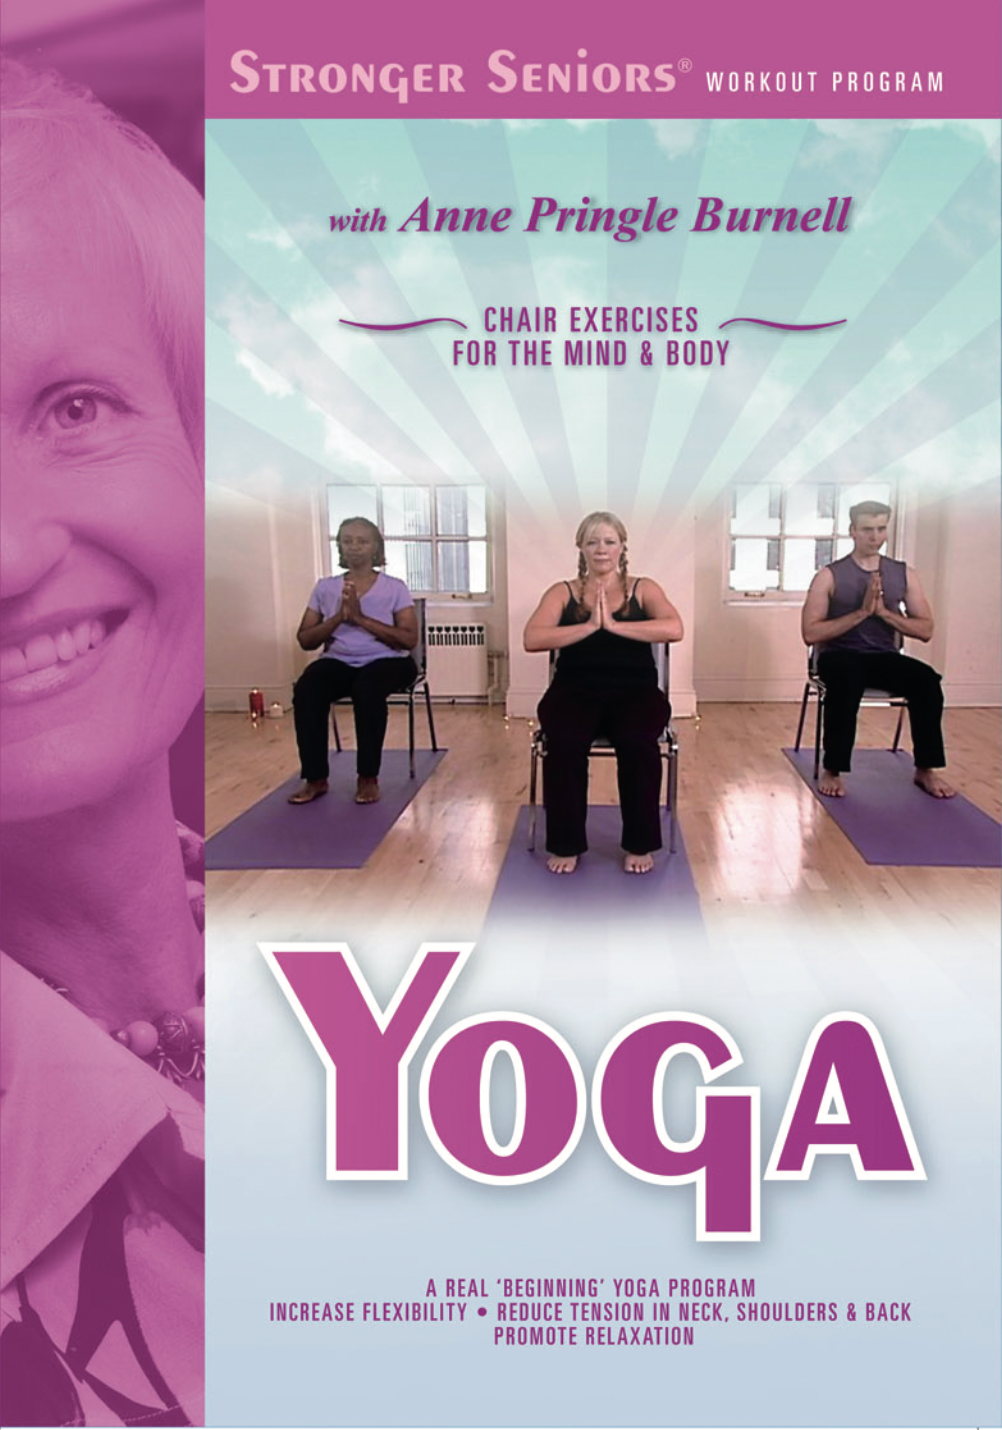 Chair Yoga Exercise DVD Video Program - Stronger Seniors Chair Exercise Programs